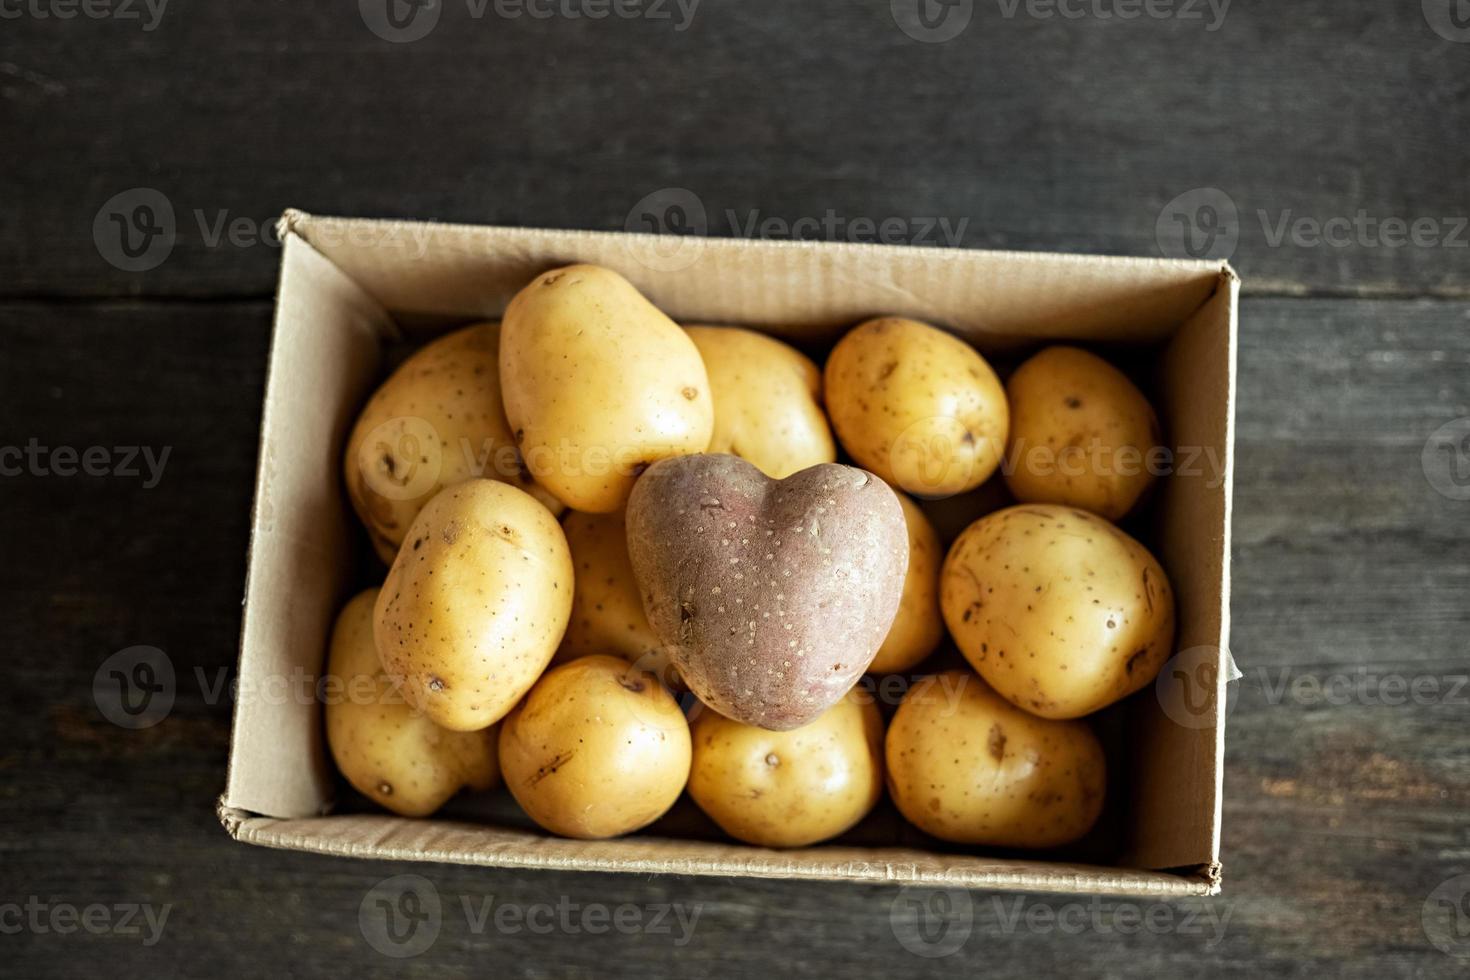 batata vermelha em forma de coração em uma caixa de papelão entre batatas brancas. foto